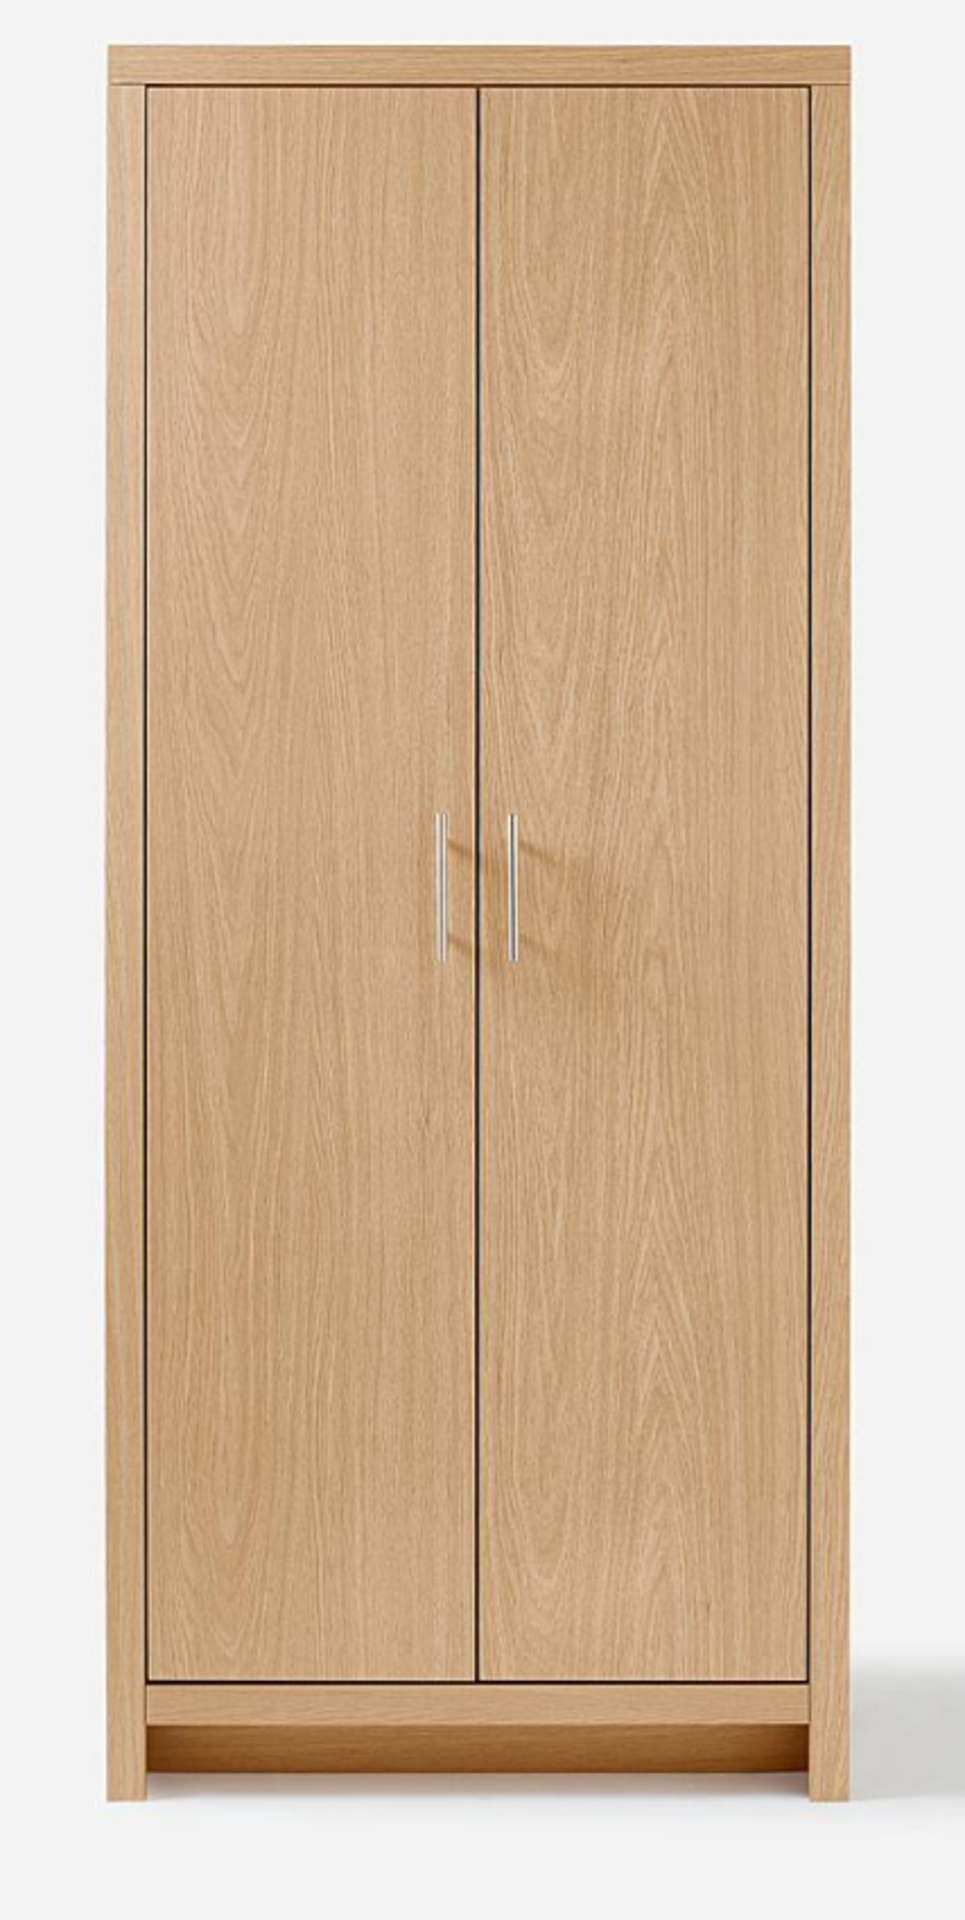 Dakota 2 Door Wardrobe. - ER28. RRP £349.00. Part of At Home Collection, the Dakota Bedroom range is